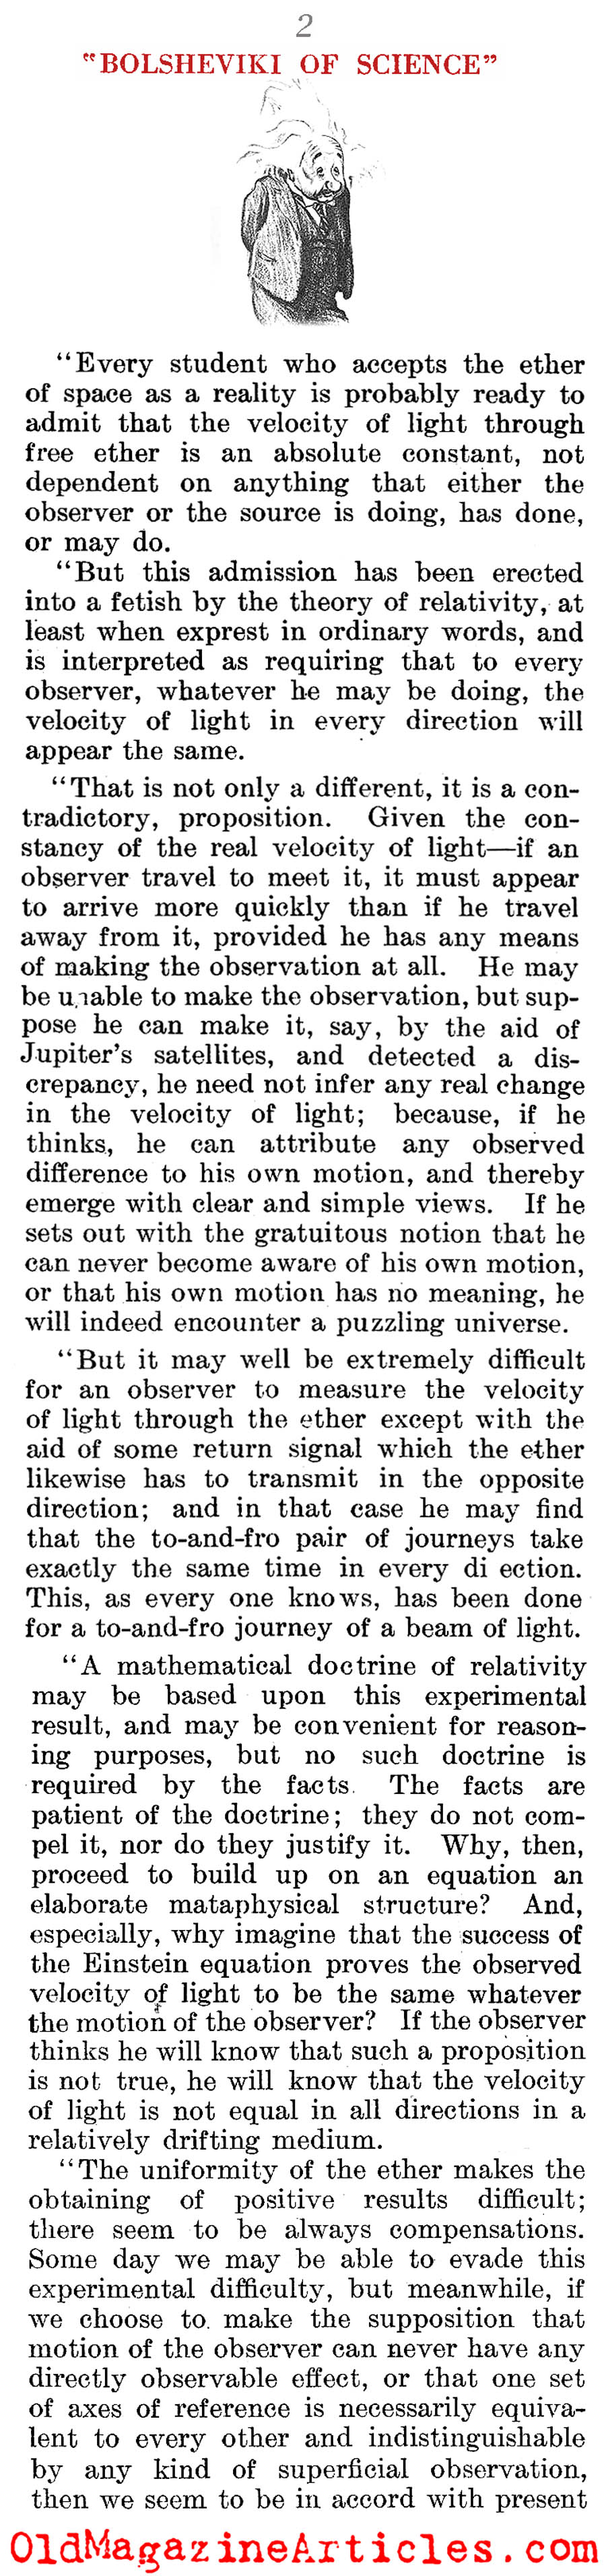 The Apostles of Einstein (The Literary Digest, 1921)